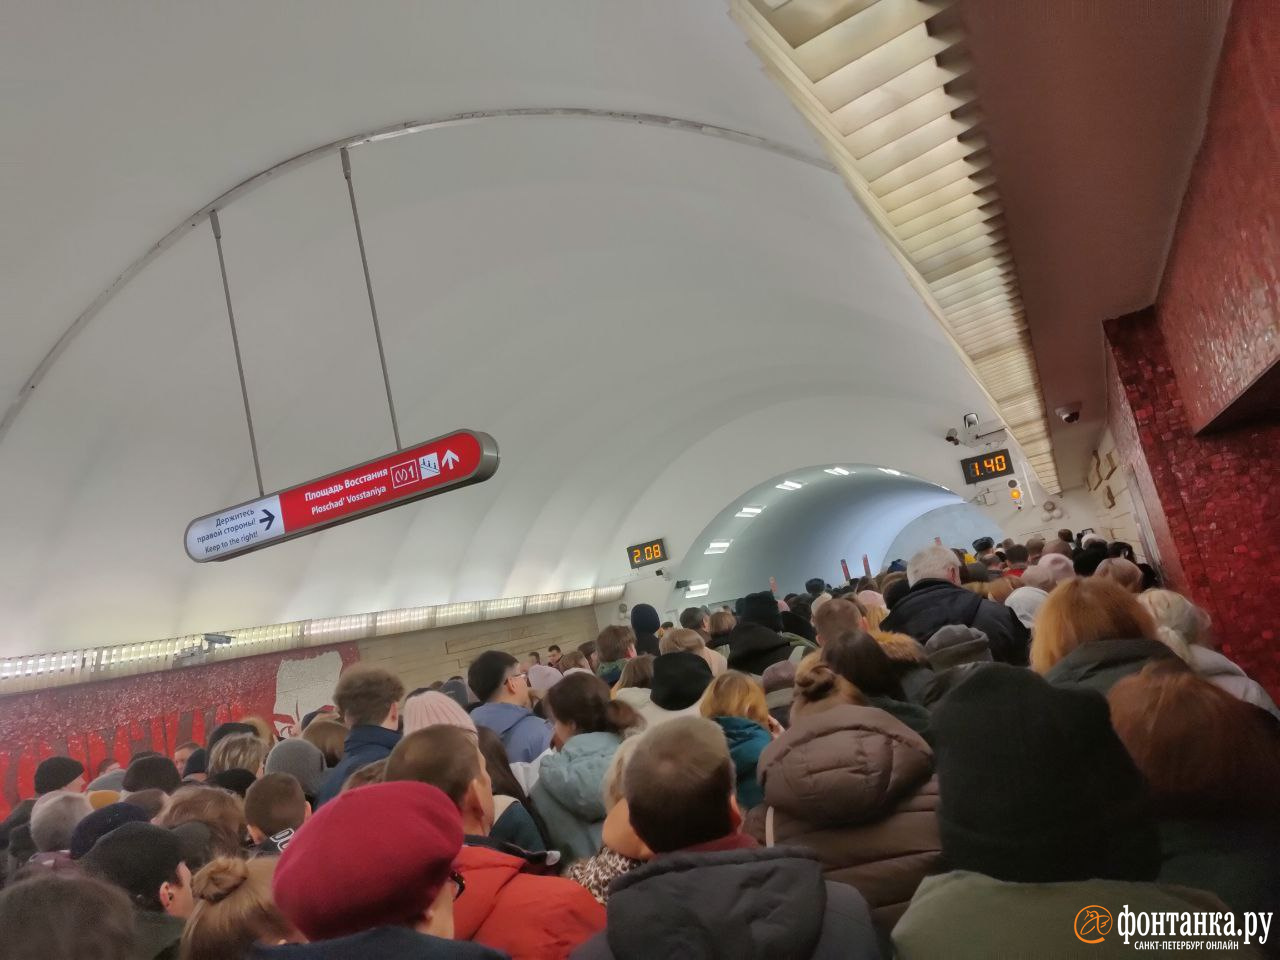 Яблоку негде упасть. Плотная толпа скопилась на станции метро «Маяковская» в Петербурге